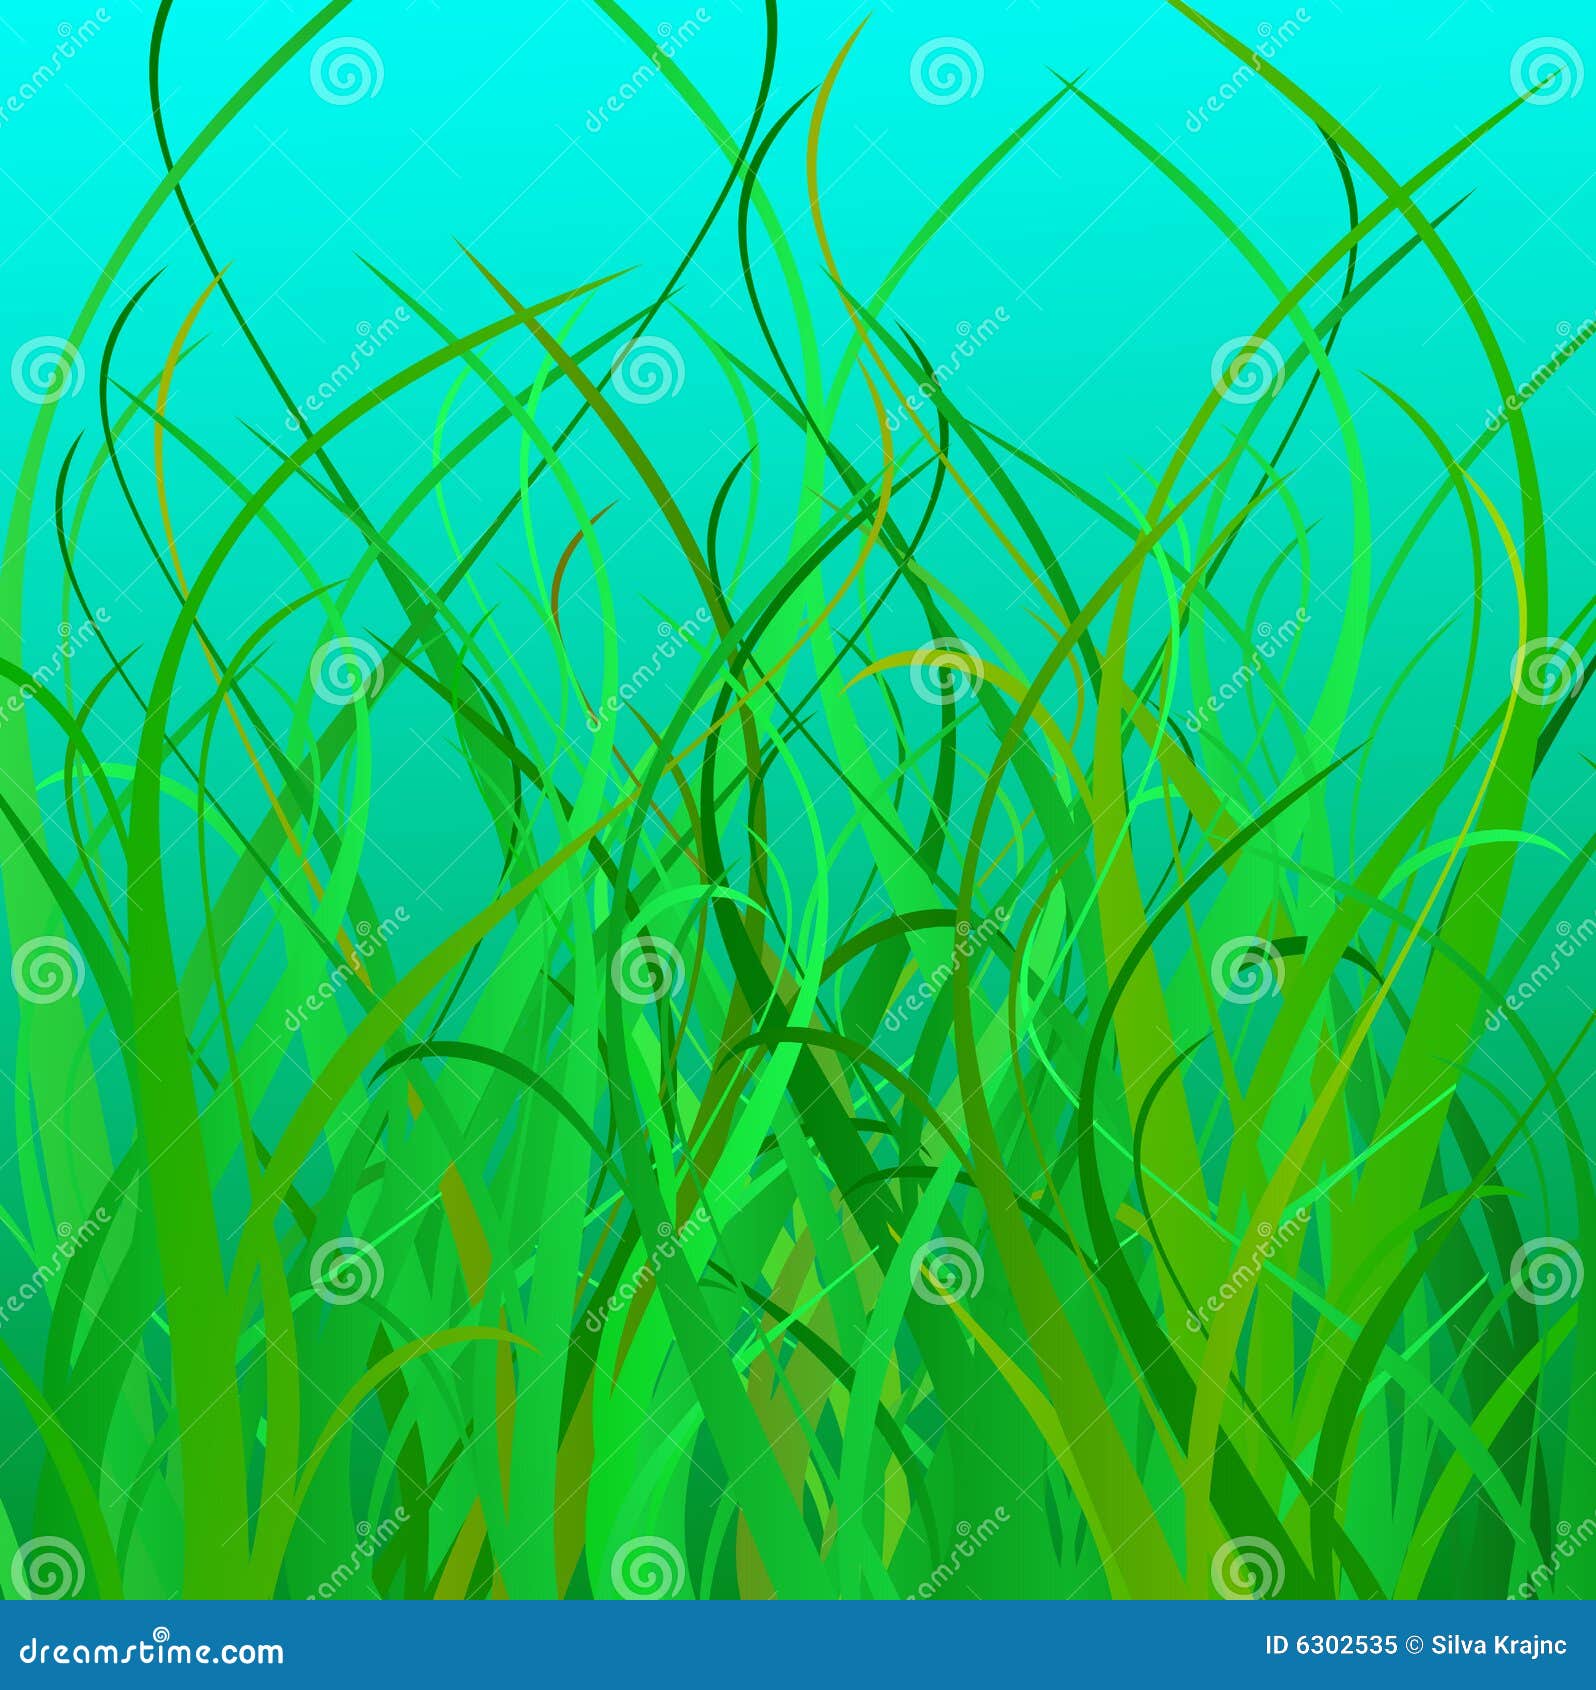 sea grass clip art free - photo #20